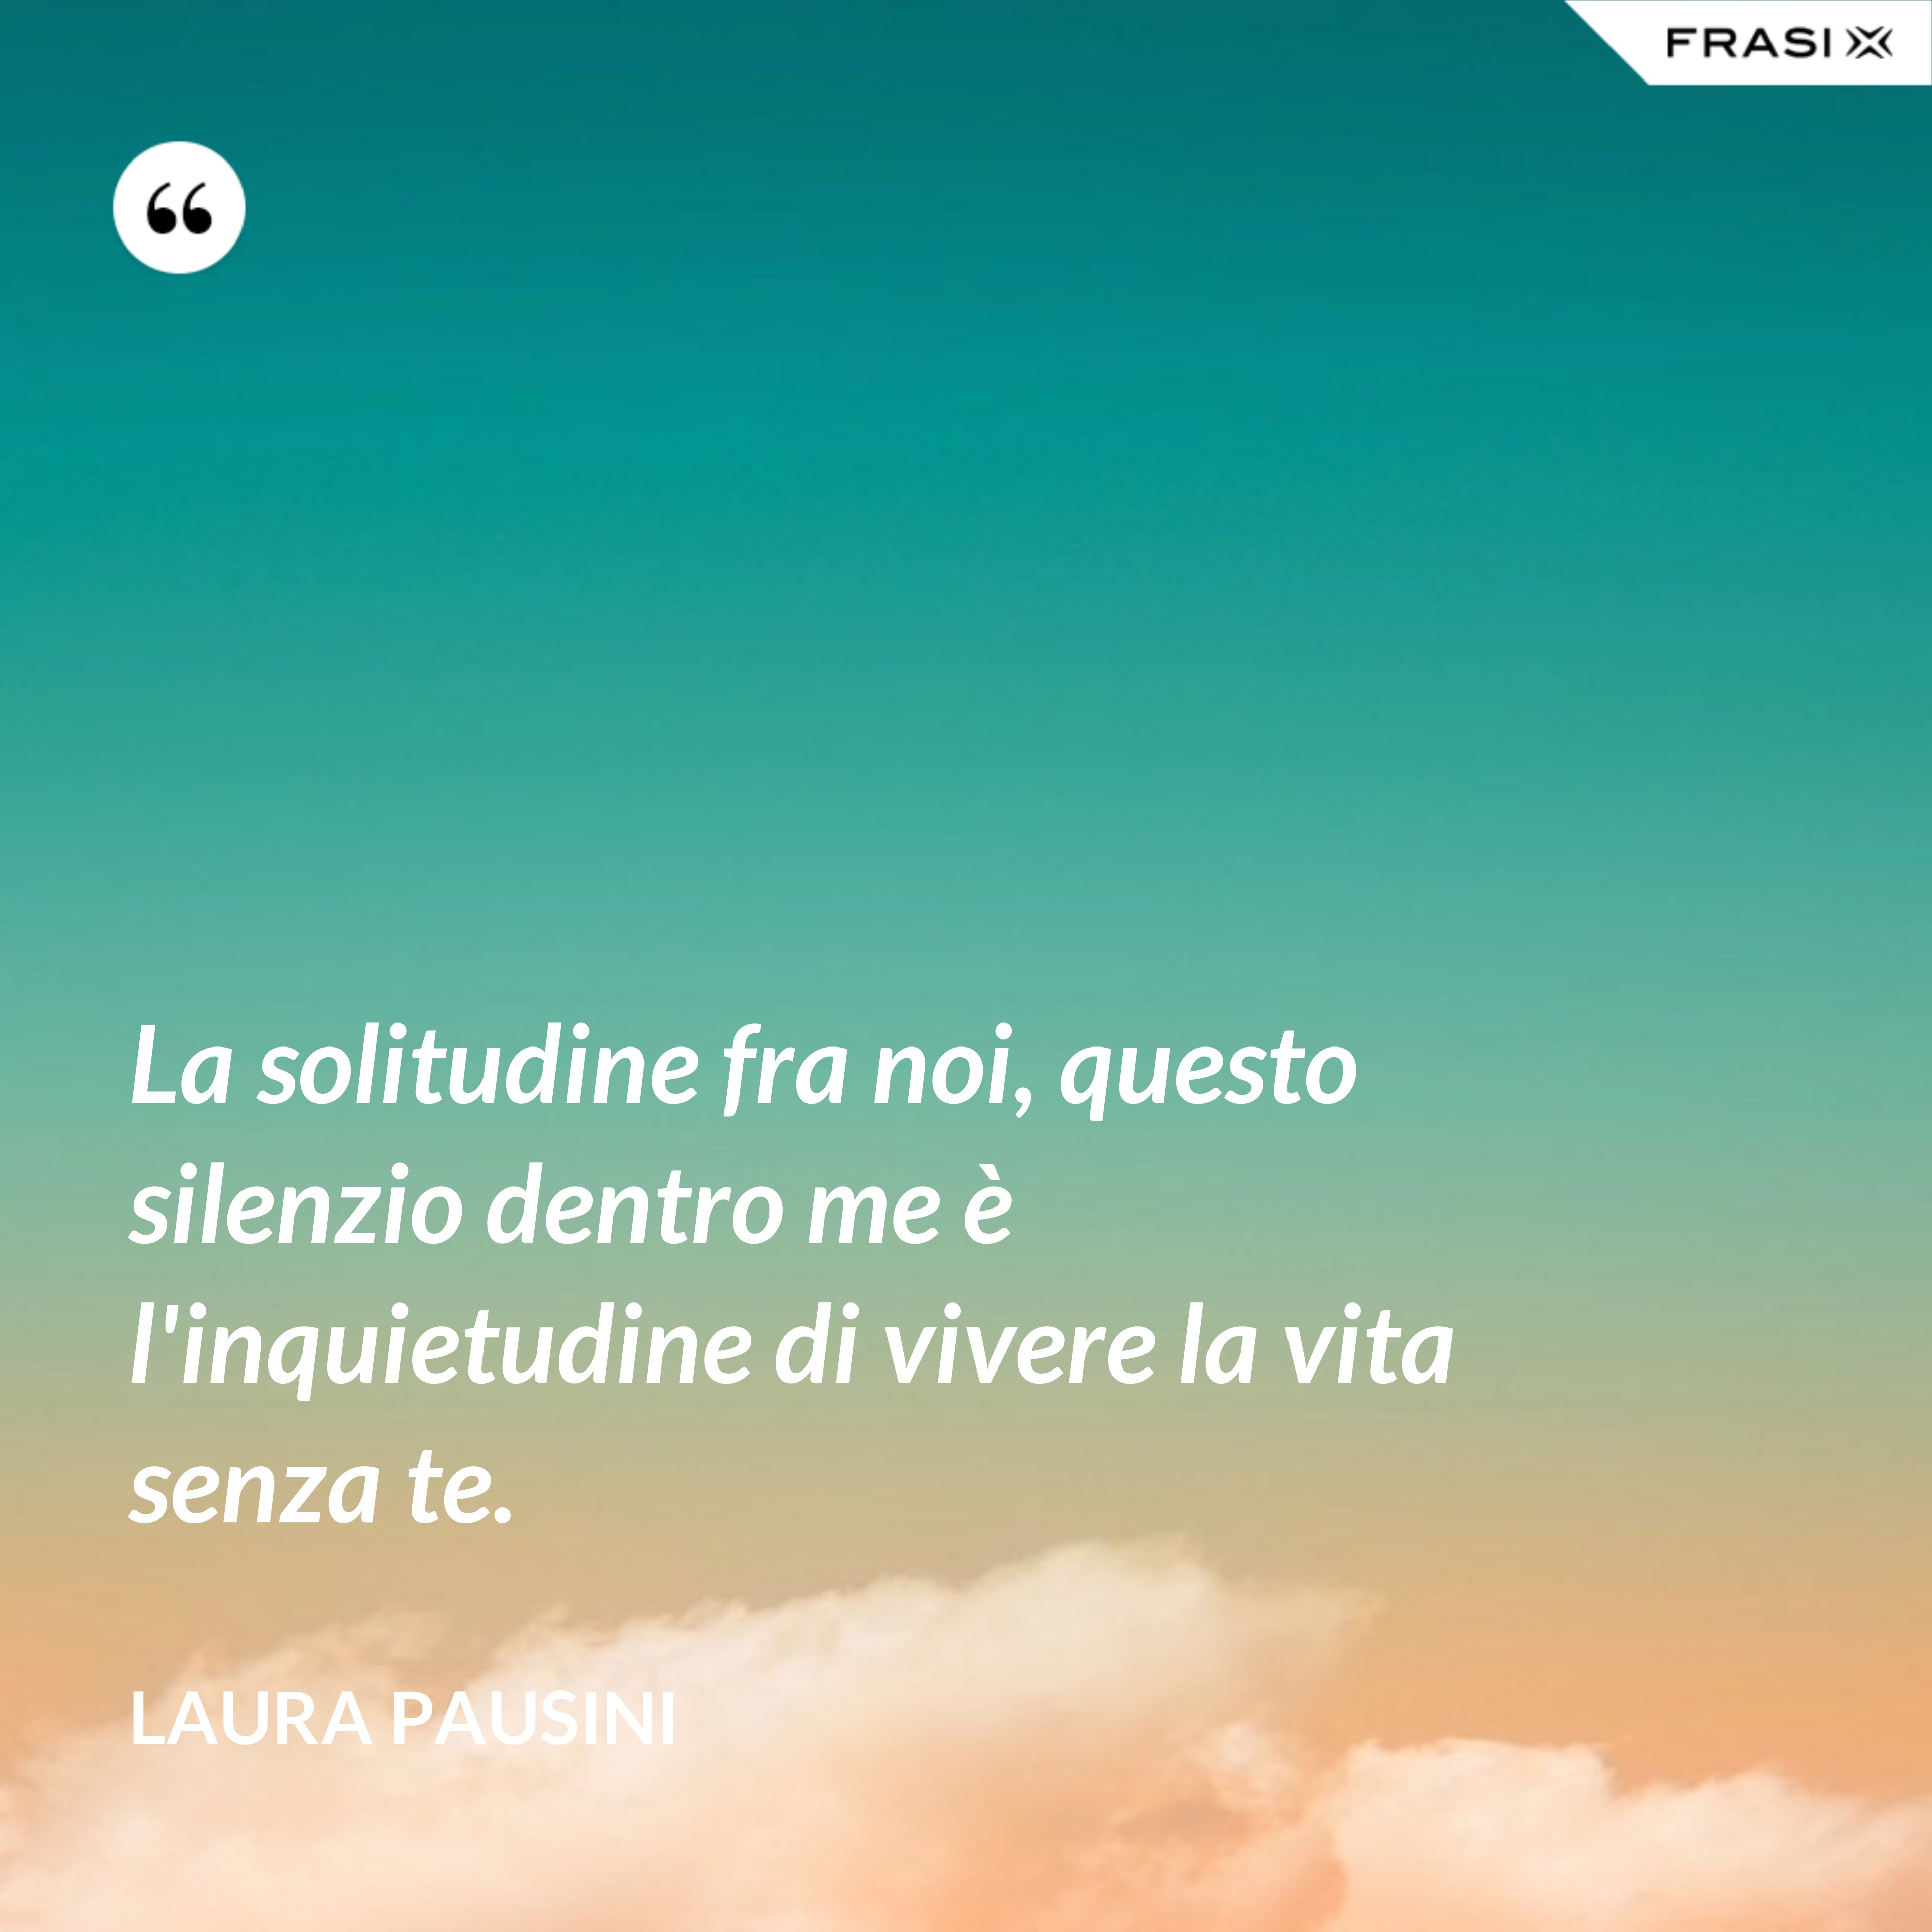 La solitudine fra noi, questo silenzio dentro me è l'inquietudine di vivere la vita senza te. - Laura Pausini